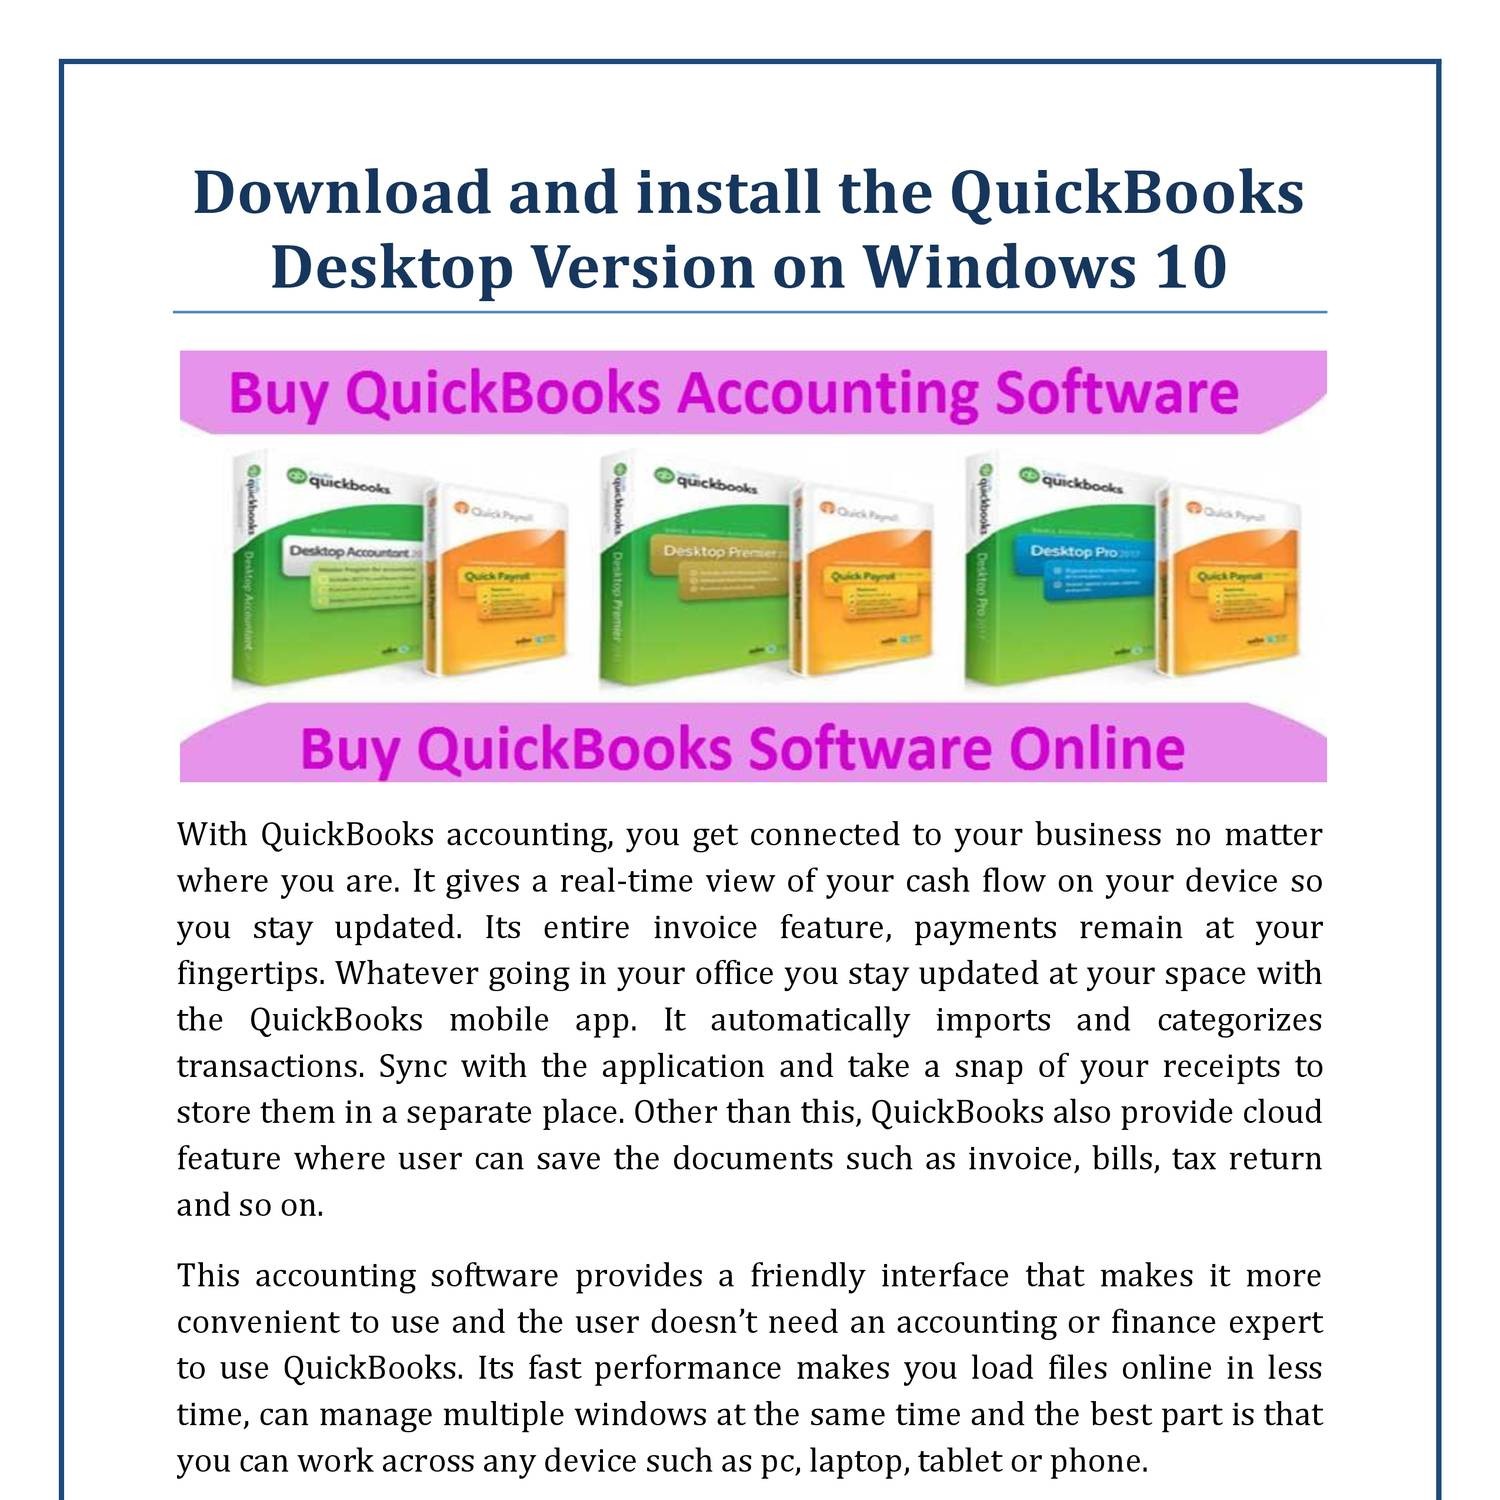 intuit quickbooks 2015 upgrade download